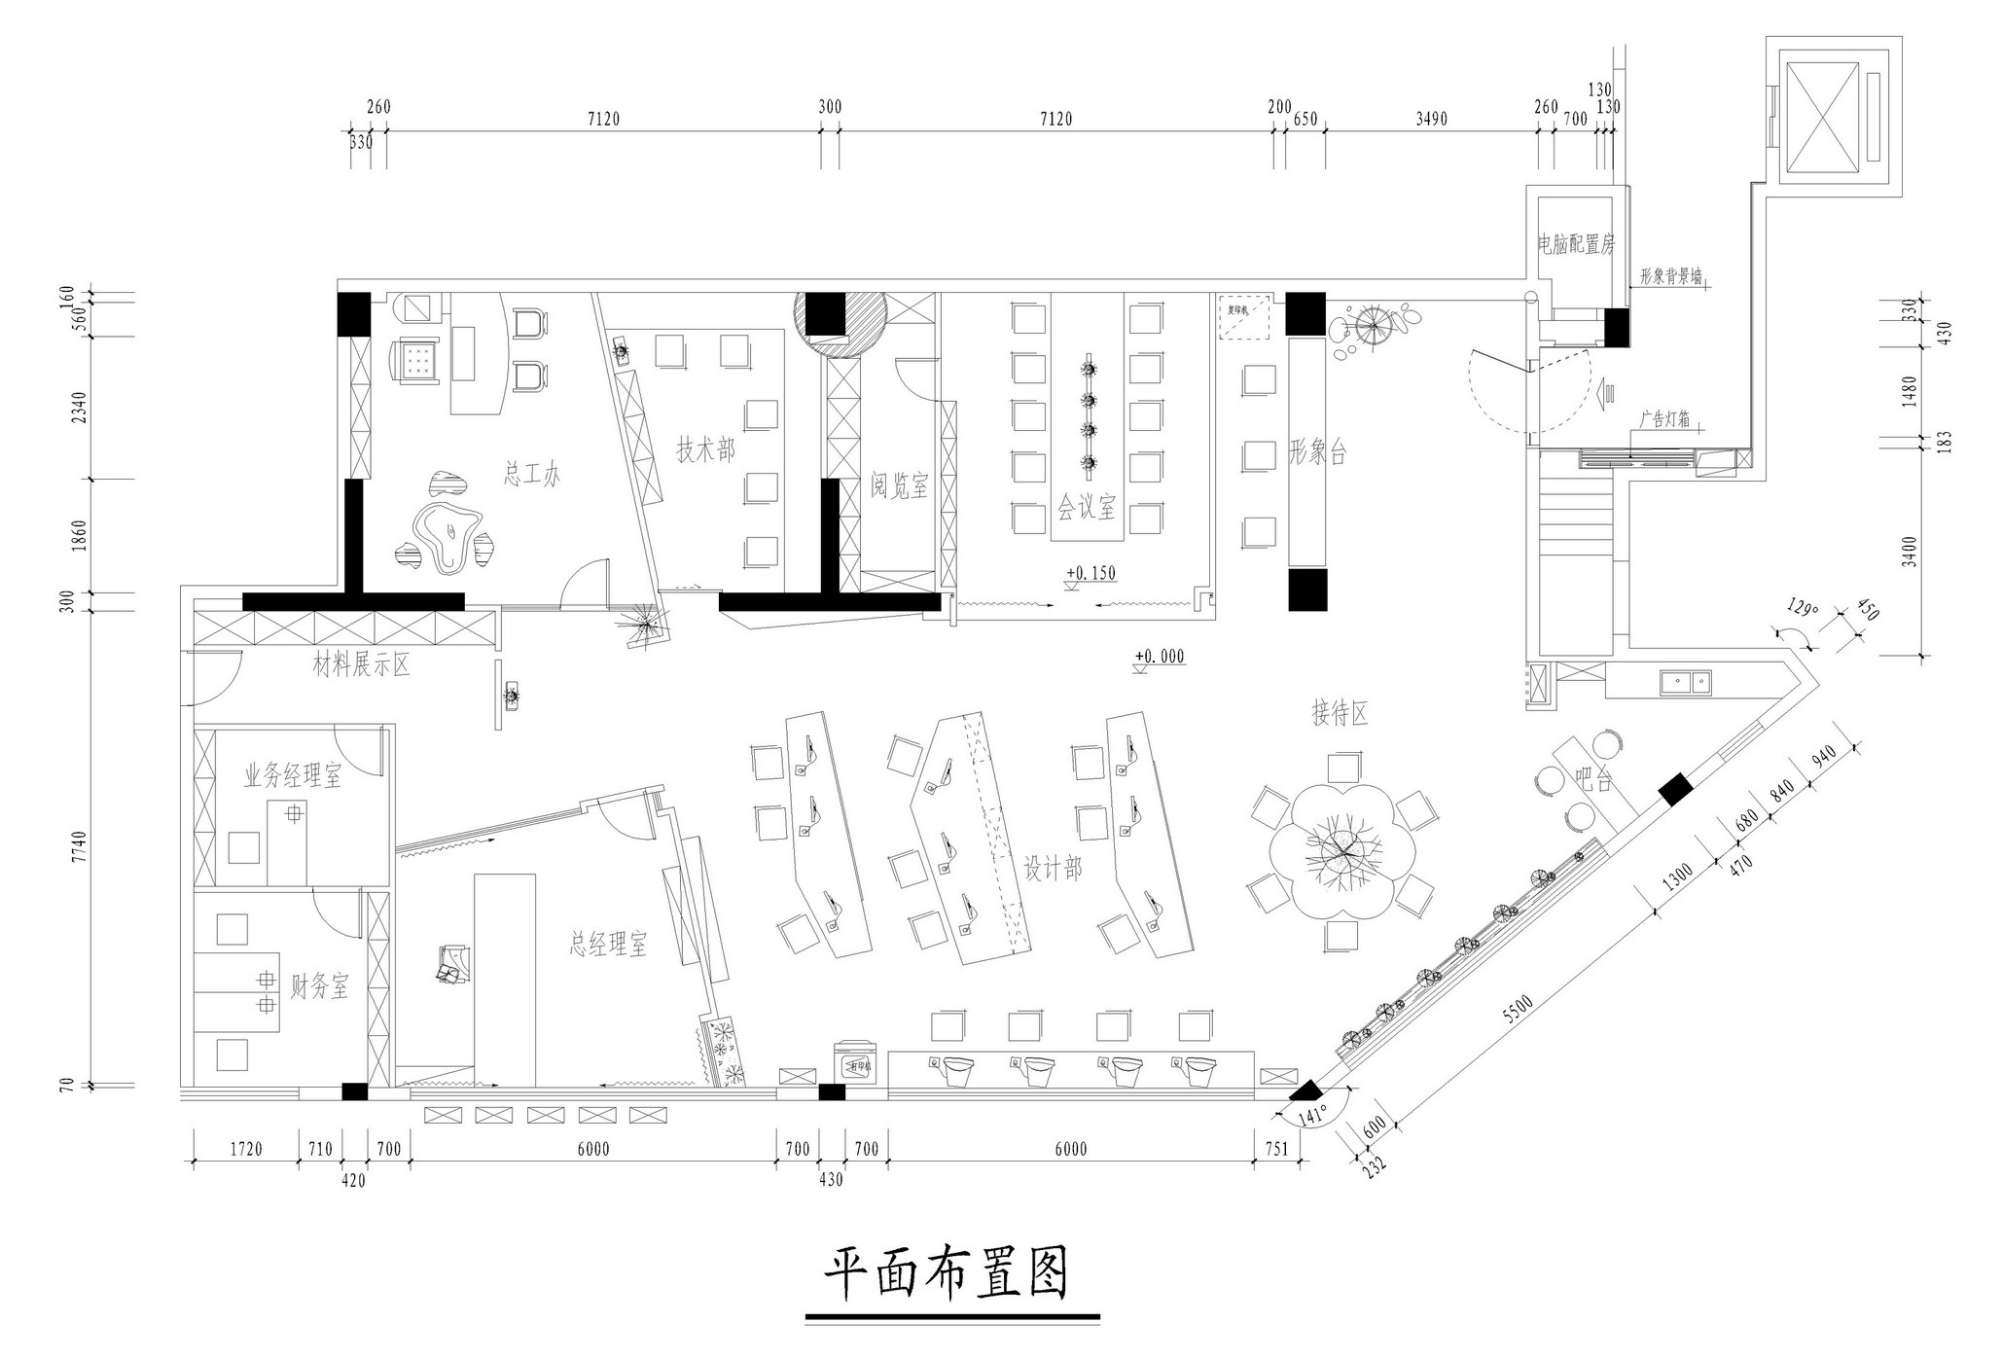 龙岗区本地专业办公室装修设计价格 欢迎咨询 深圳市大良岗建设集团供应